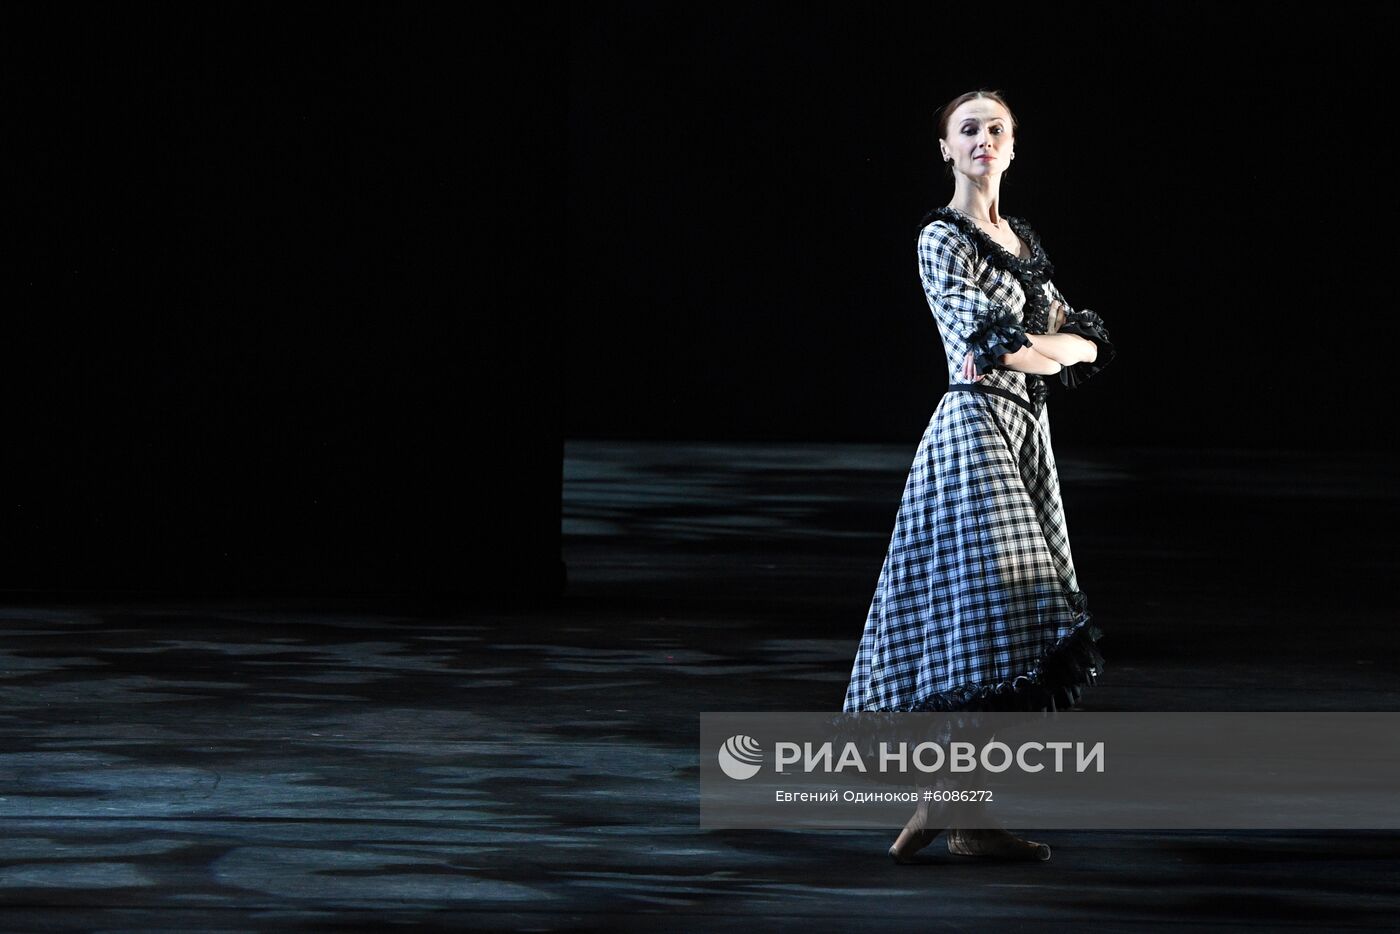 Новая программа балерины Большого театра С. Захаровой